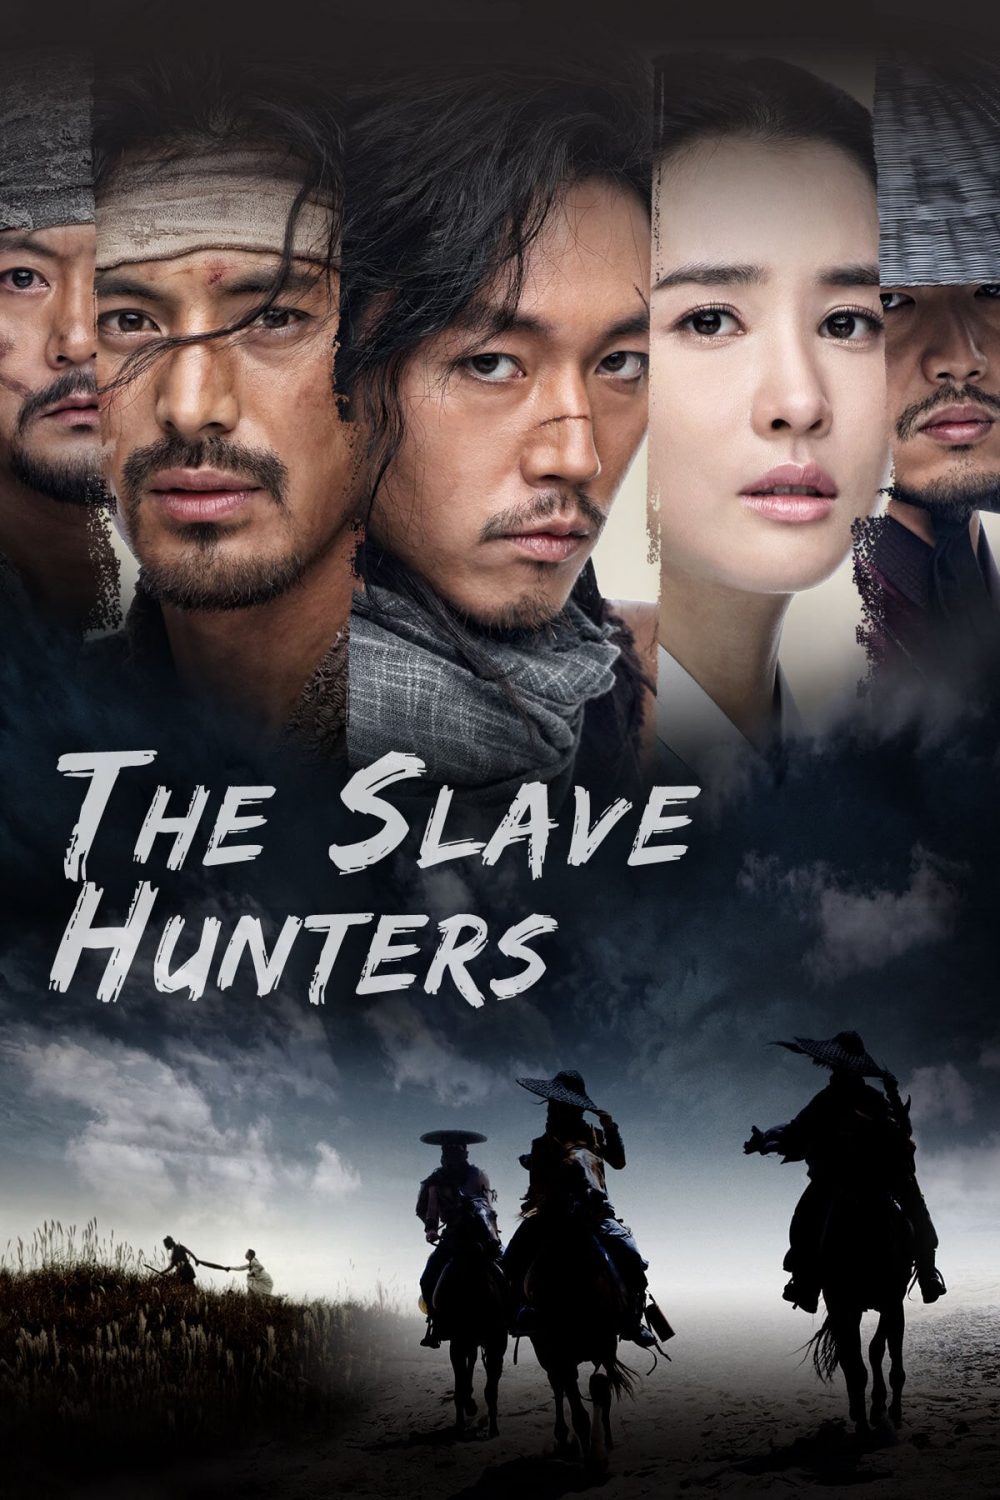 Săn nô lệ - The Slave Hunters (2010), phim cổ trang Hàn Quốc hay nhất